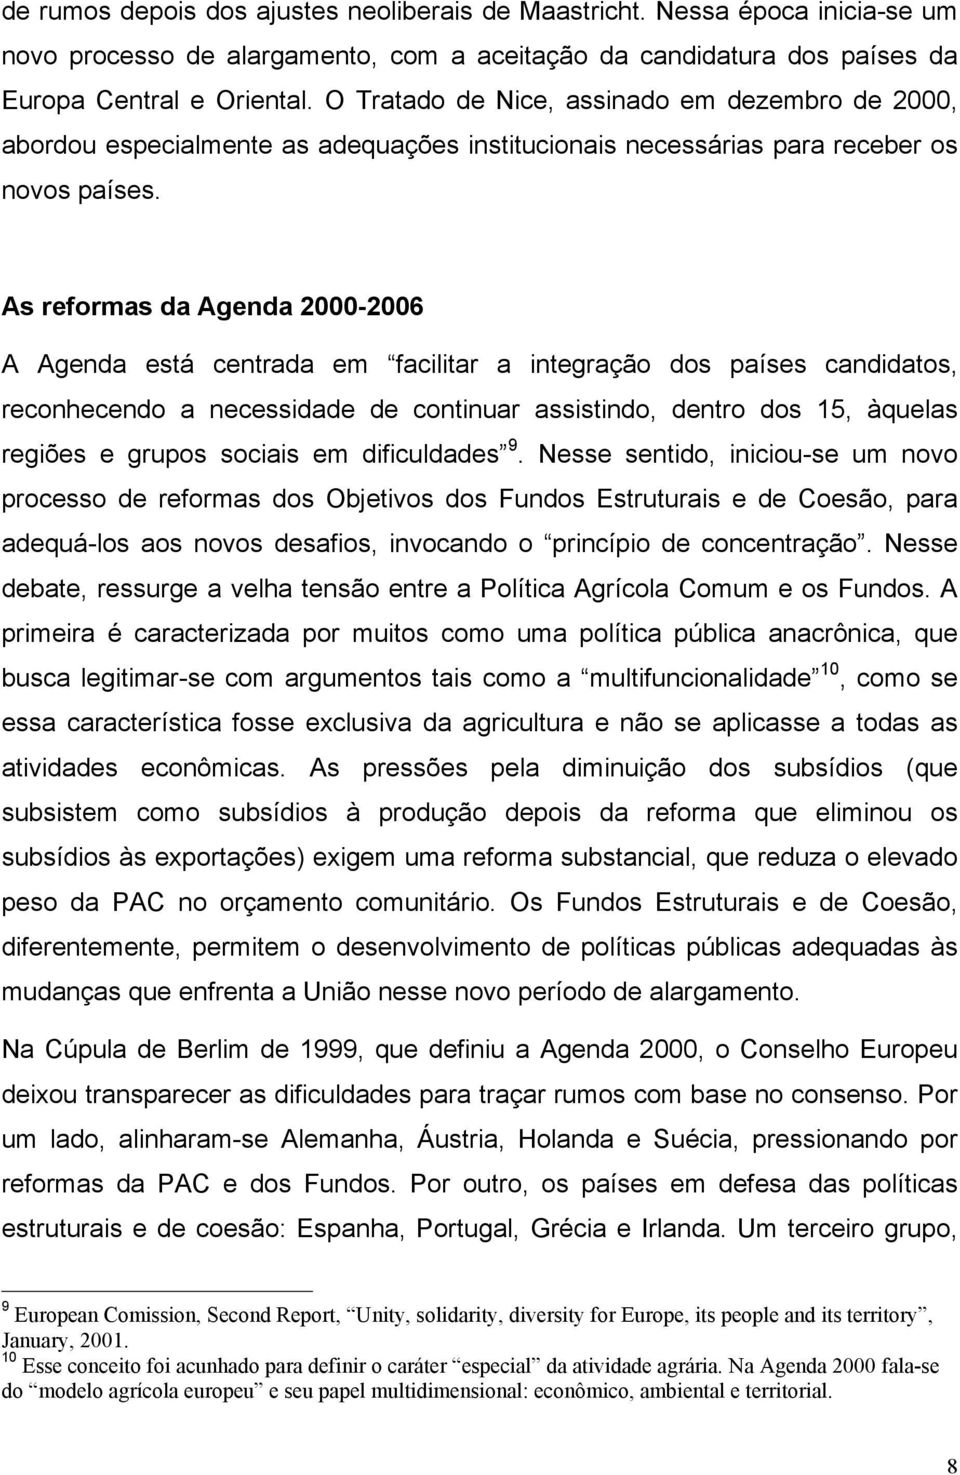 As reformas da Agenda 2000-2006 A Agenda está centrada em facilitar a integração dos países candidatos, reconhecendo a necessidade de continuar assistindo, dentro dos 15, àquelas regiões e grupos